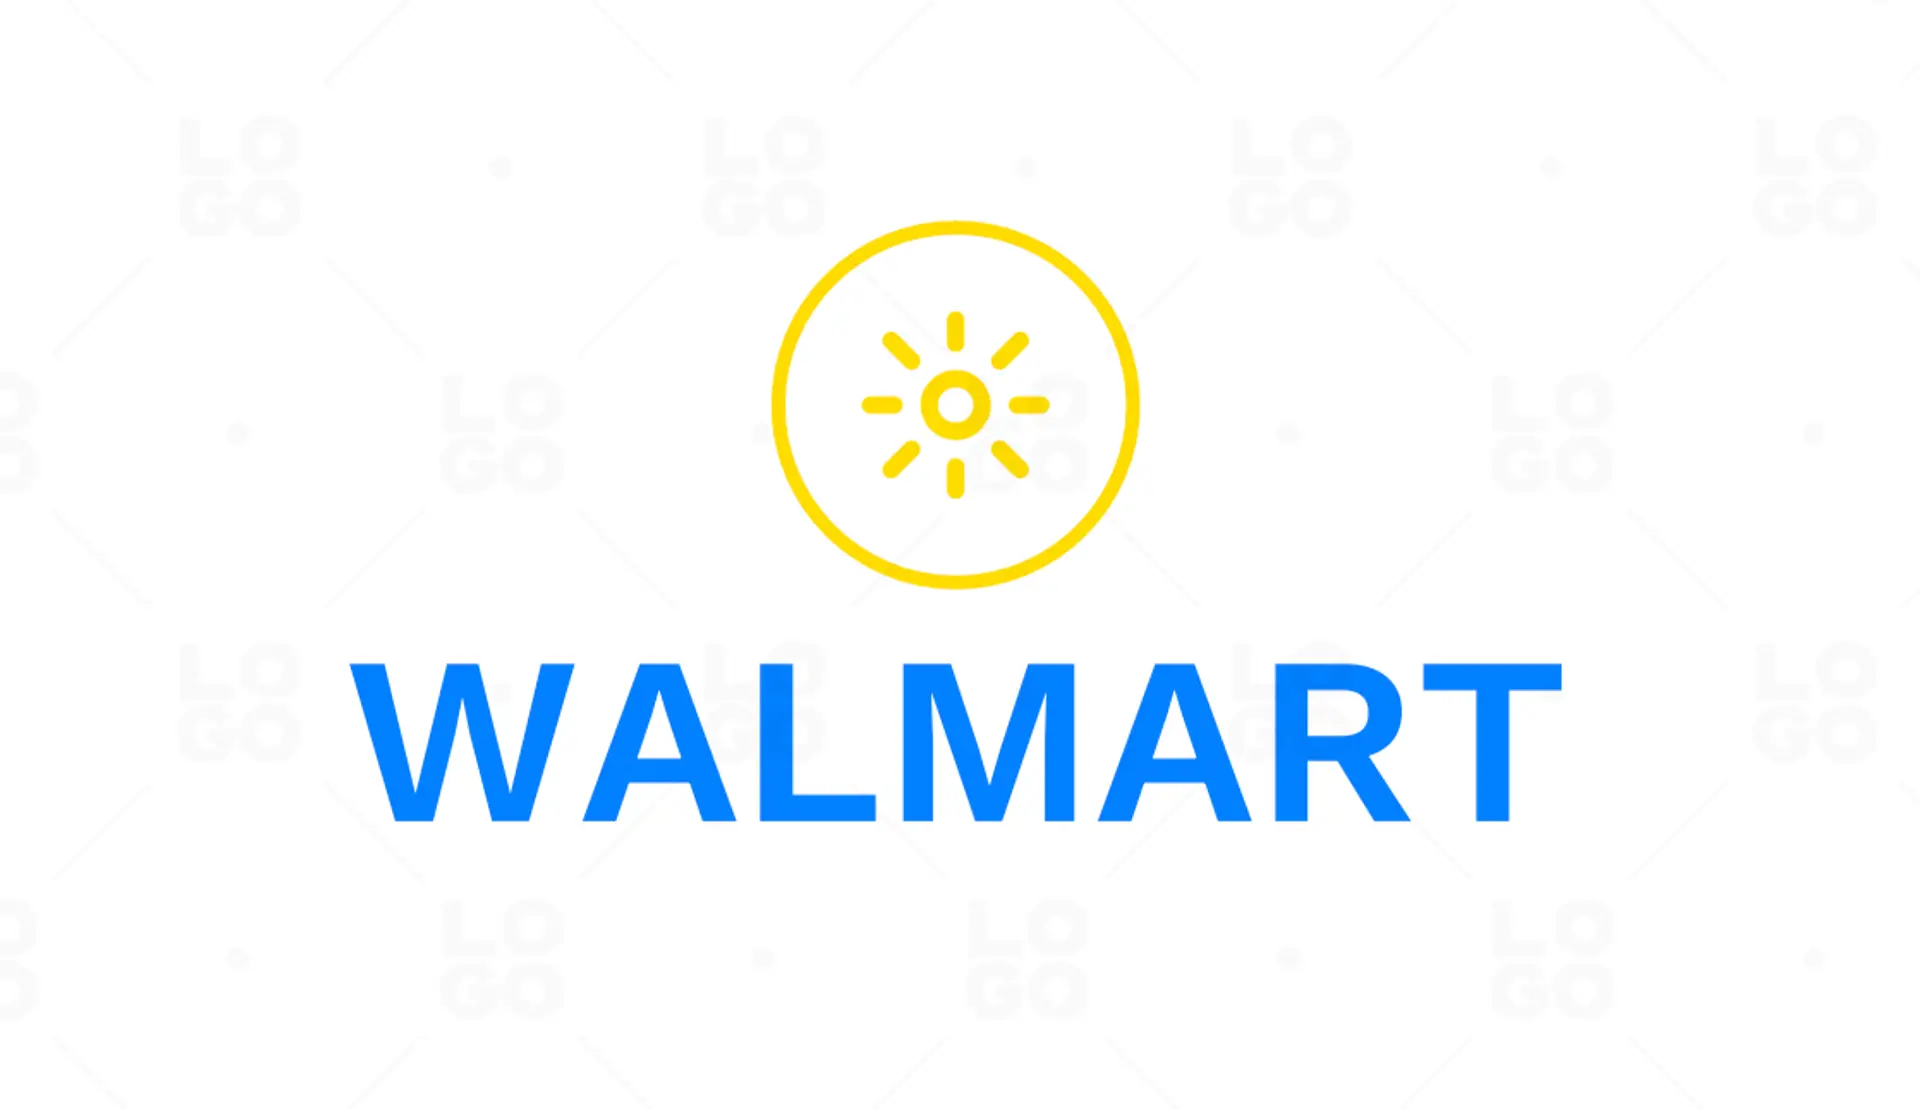 Walmart logo variation